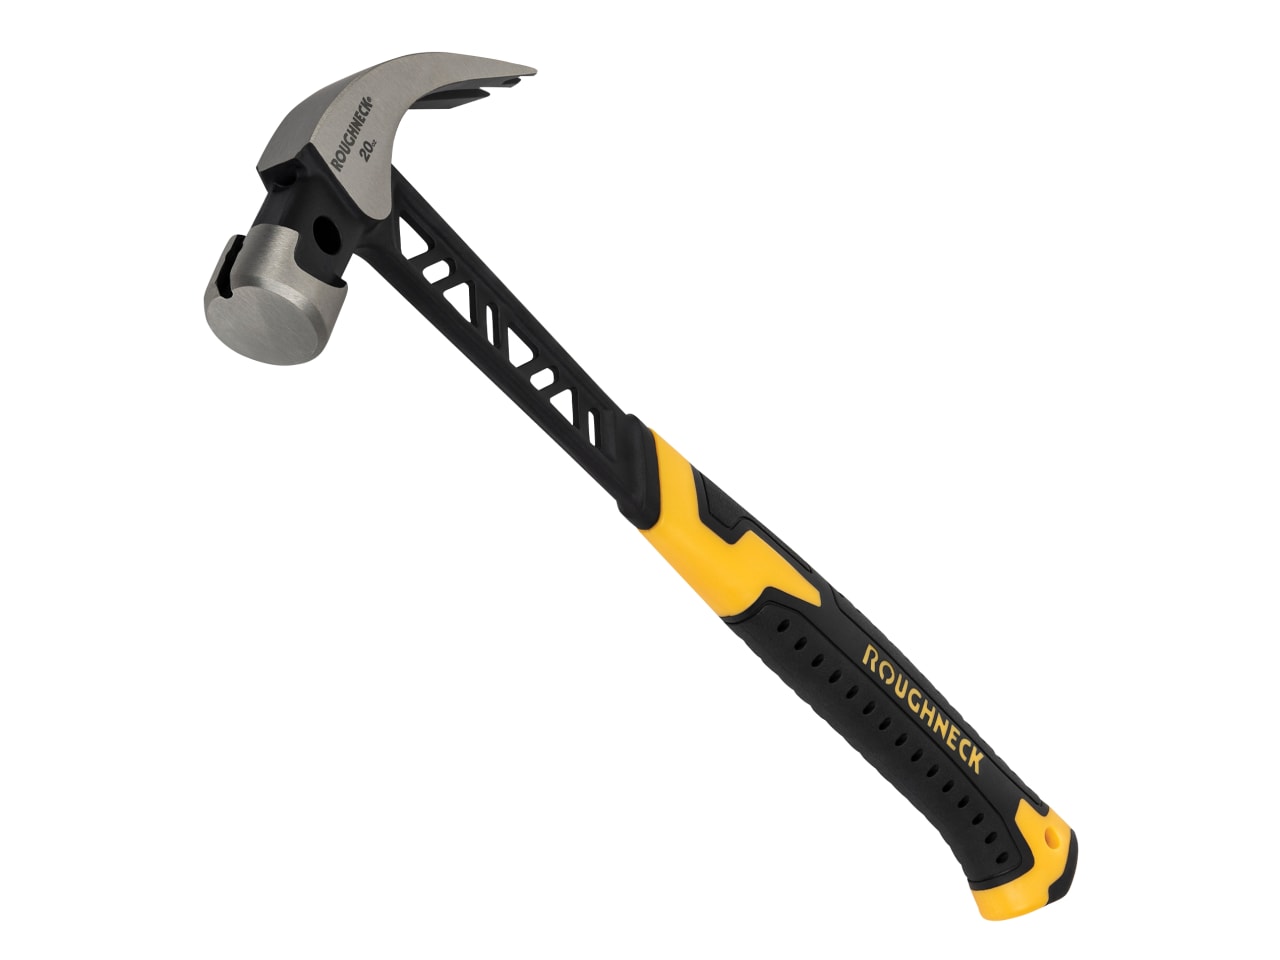 Roughneck Claw Hammer 20Oz - XMS23GORHAM